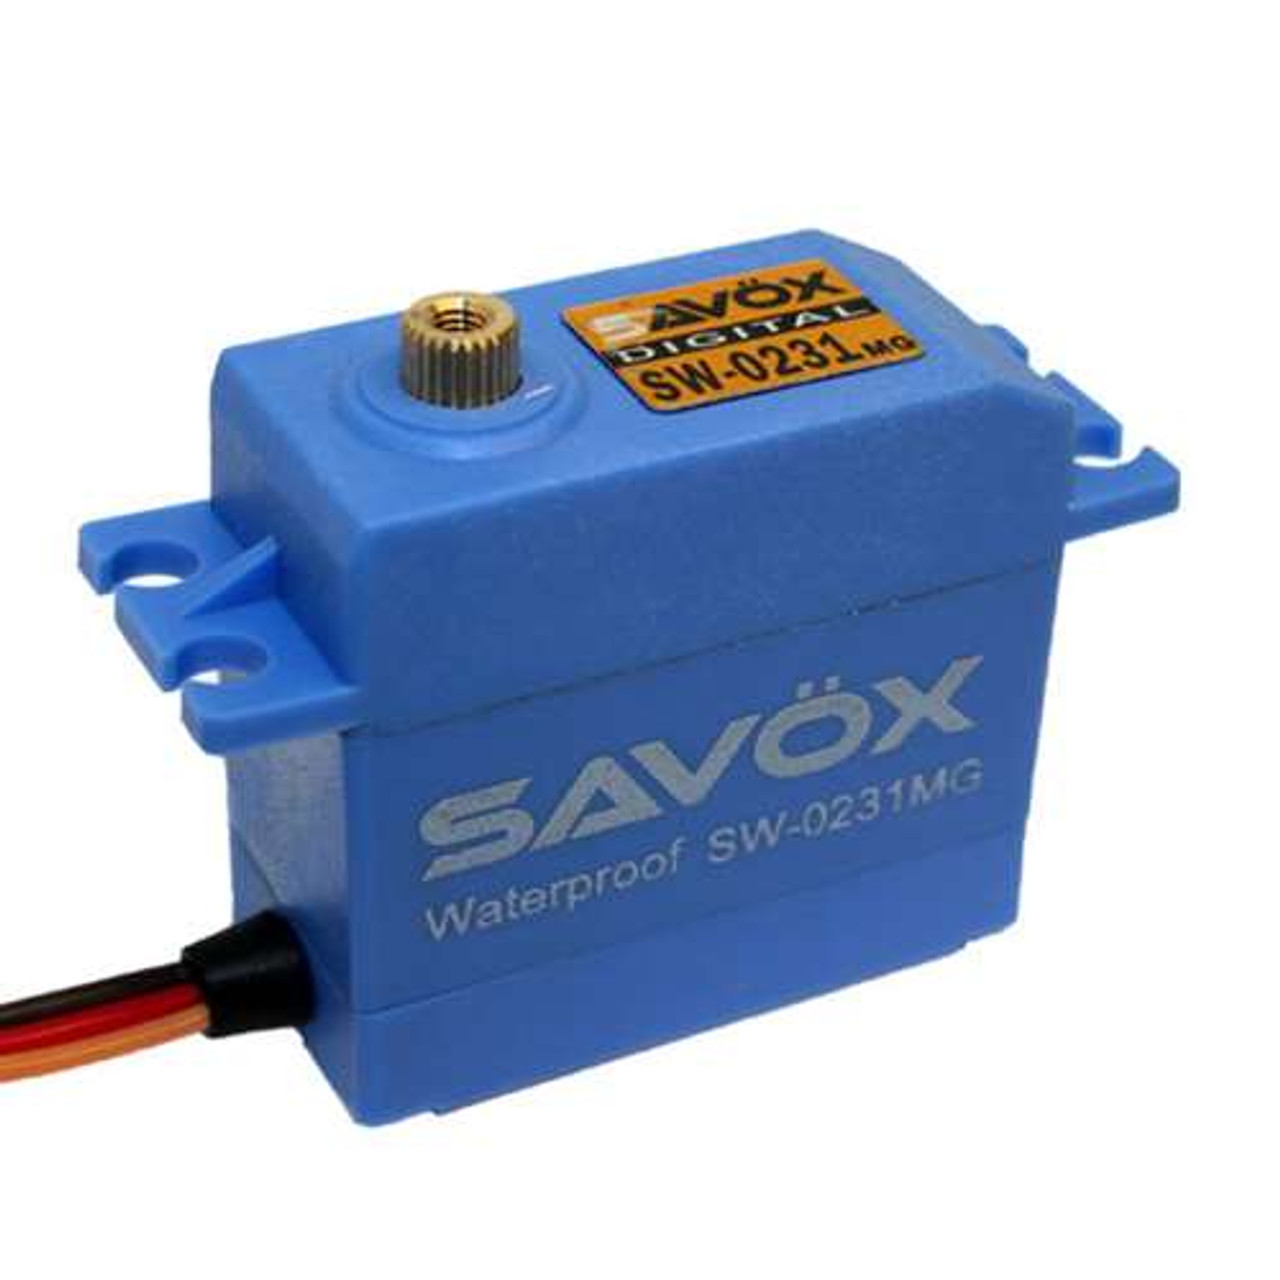 Savox SAVSW0231MG Waterproof High Torque STD Metal Gear Digital Servo